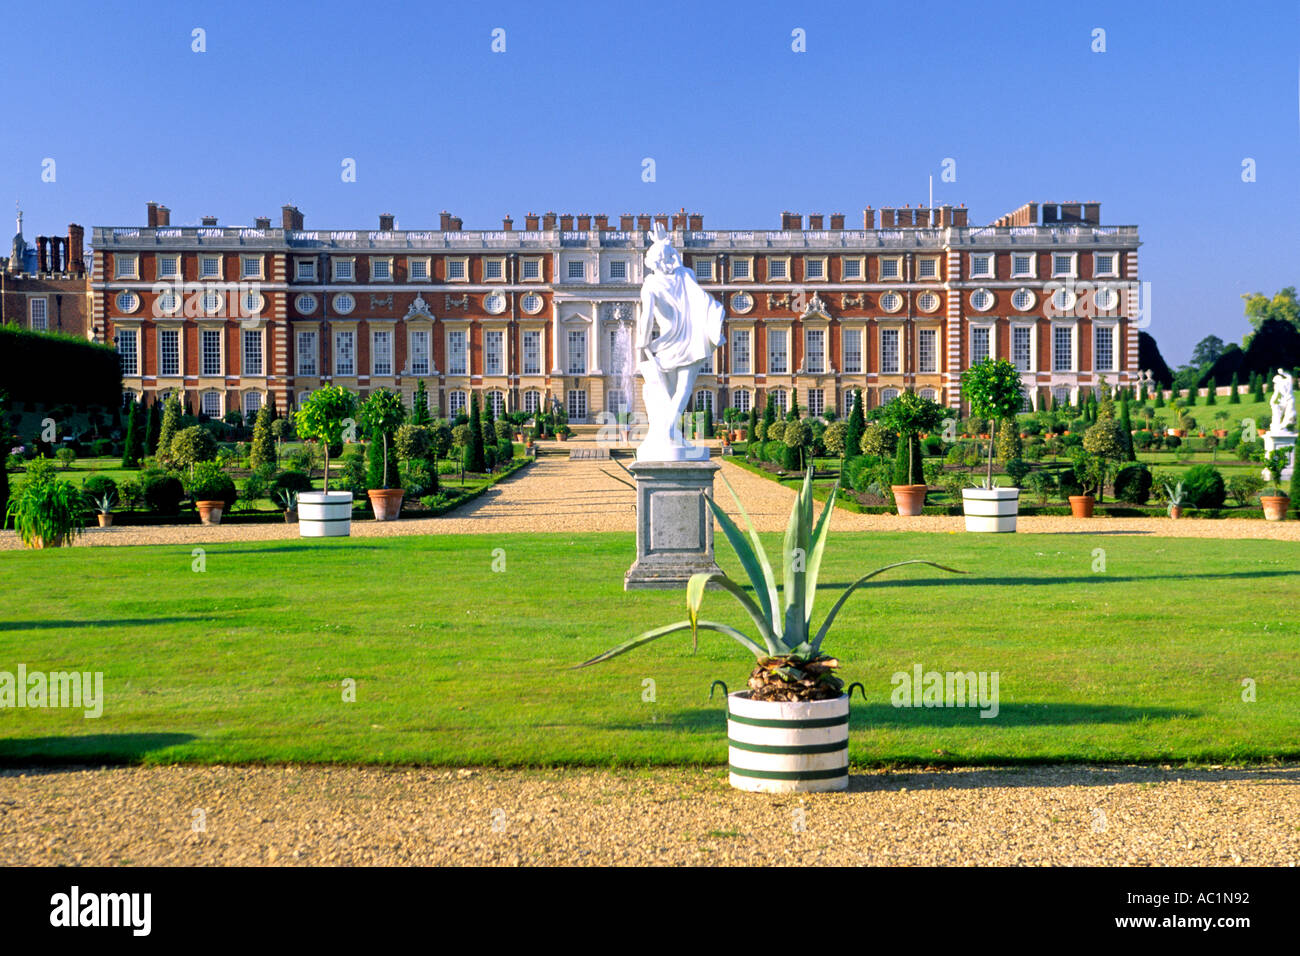 L'aile sud (baroque) et jardin privé de Hampton Court Palace, à Hampton, en Angleterre. Banque D'Images